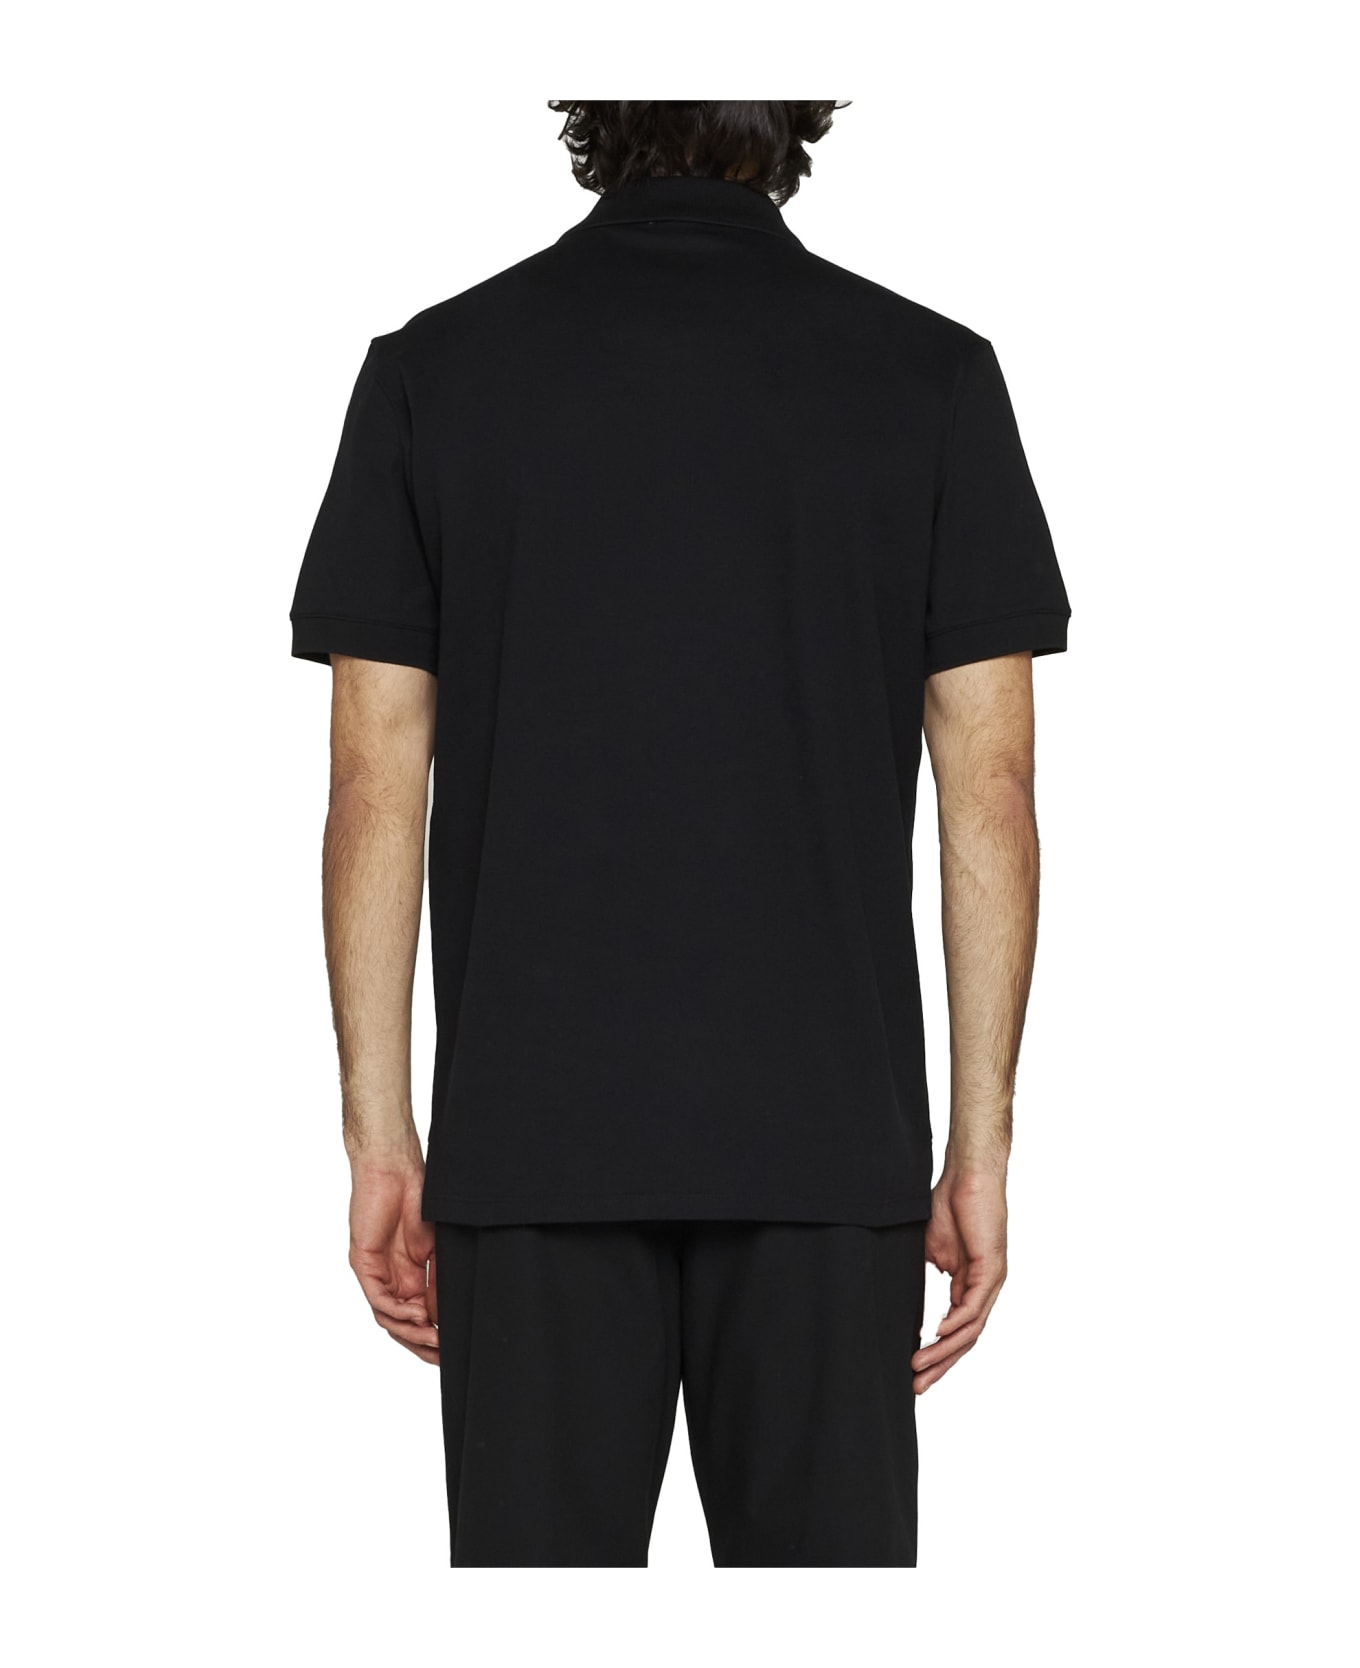 Alexander McQueen Embroidered Logo Polo Shirt - Black